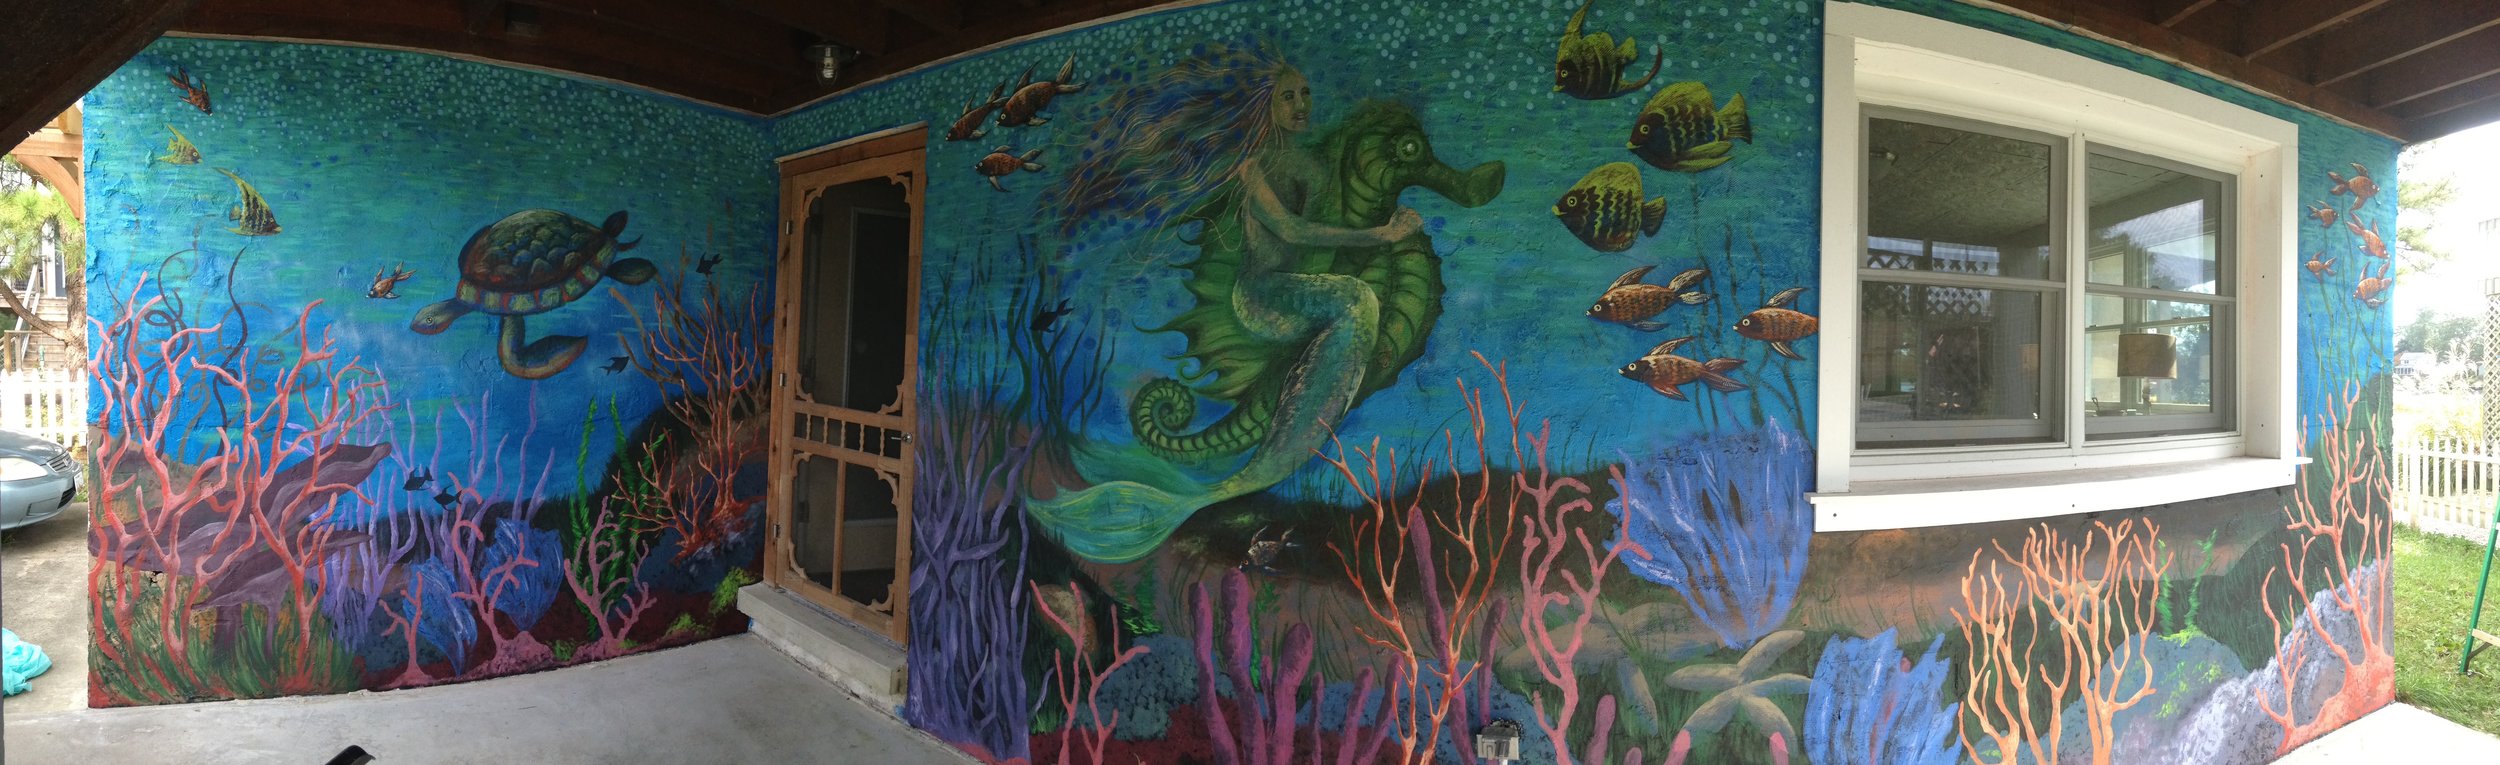 Underwater Mural in Lewes, DE